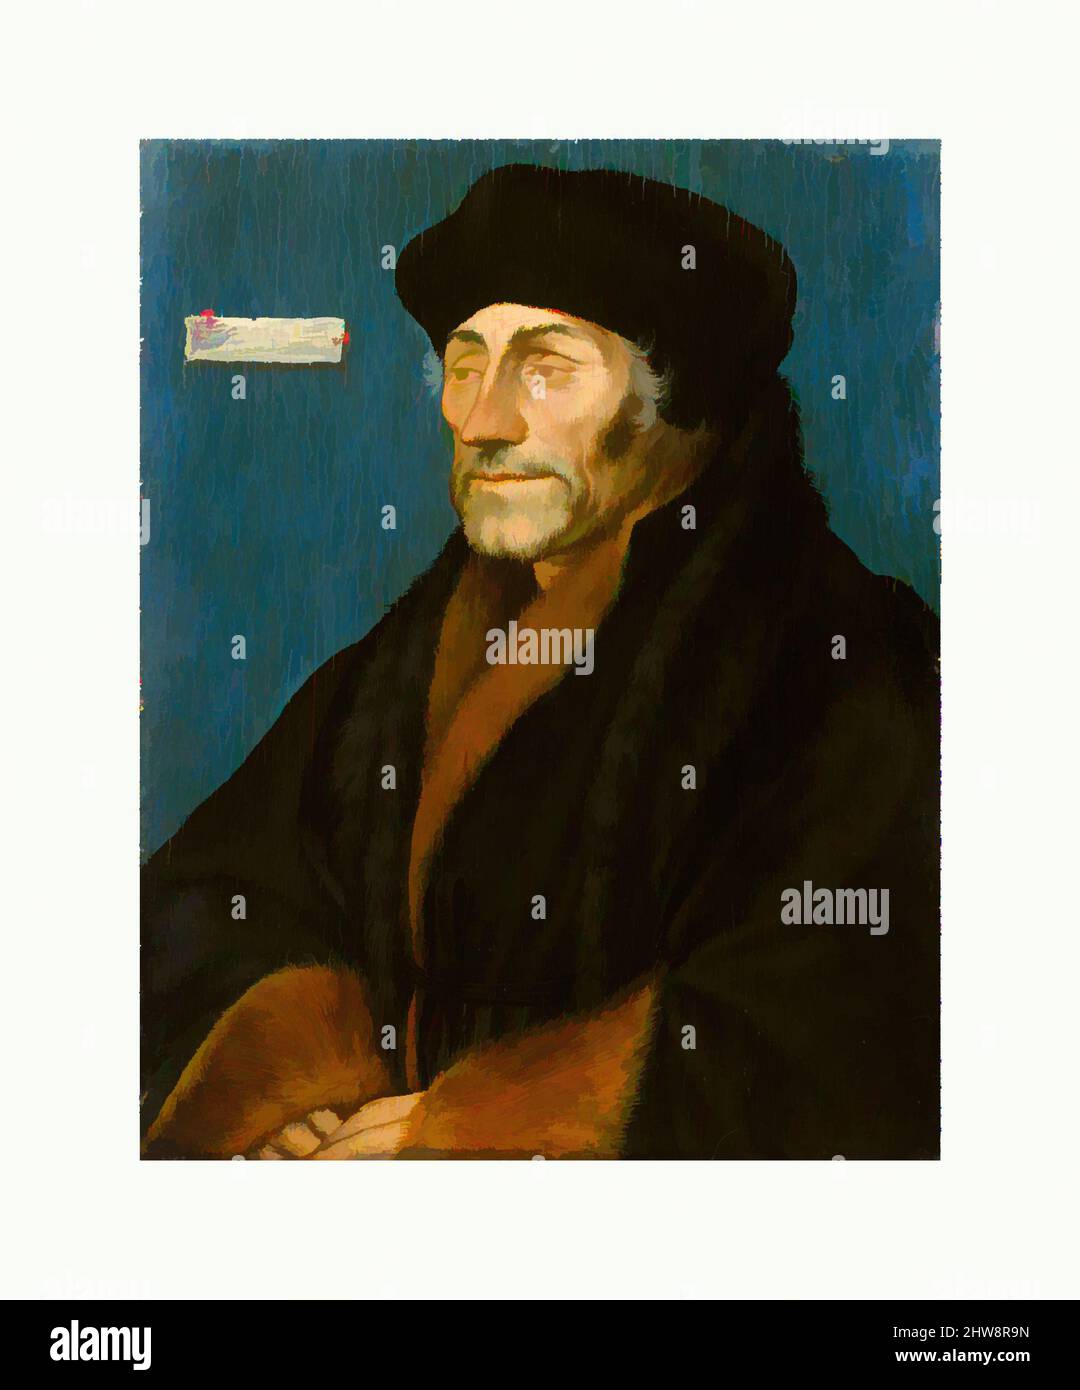 Art inspiré par Erasmus de Rotterdam, ca. 1532, huile sur panneau de linden, 7 1/4 x 5 9/16 in. (18,4 x 14,2 cm); surface peinte 6 15/16 x 5 1/2 po (17,6 x 14 cm), peintures, Hans Holbein le plus jeune (allemand, Augsbourg 1497/98–1543 Londres) (et Workshop(?)), Hans Holbein le plus jeune en était un, œuvres classiques modernisées par Artotop avec une touche de modernité. Formes, couleur et valeur, impact visuel accrocheur sur l'art émotions par la liberté d'œuvres d'art d'une manière contemporaine. Un message intemporel qui cherche une nouvelle direction créative. Artistes qui se tournent vers le support numérique et créent le NFT Artotop Banque D'Images